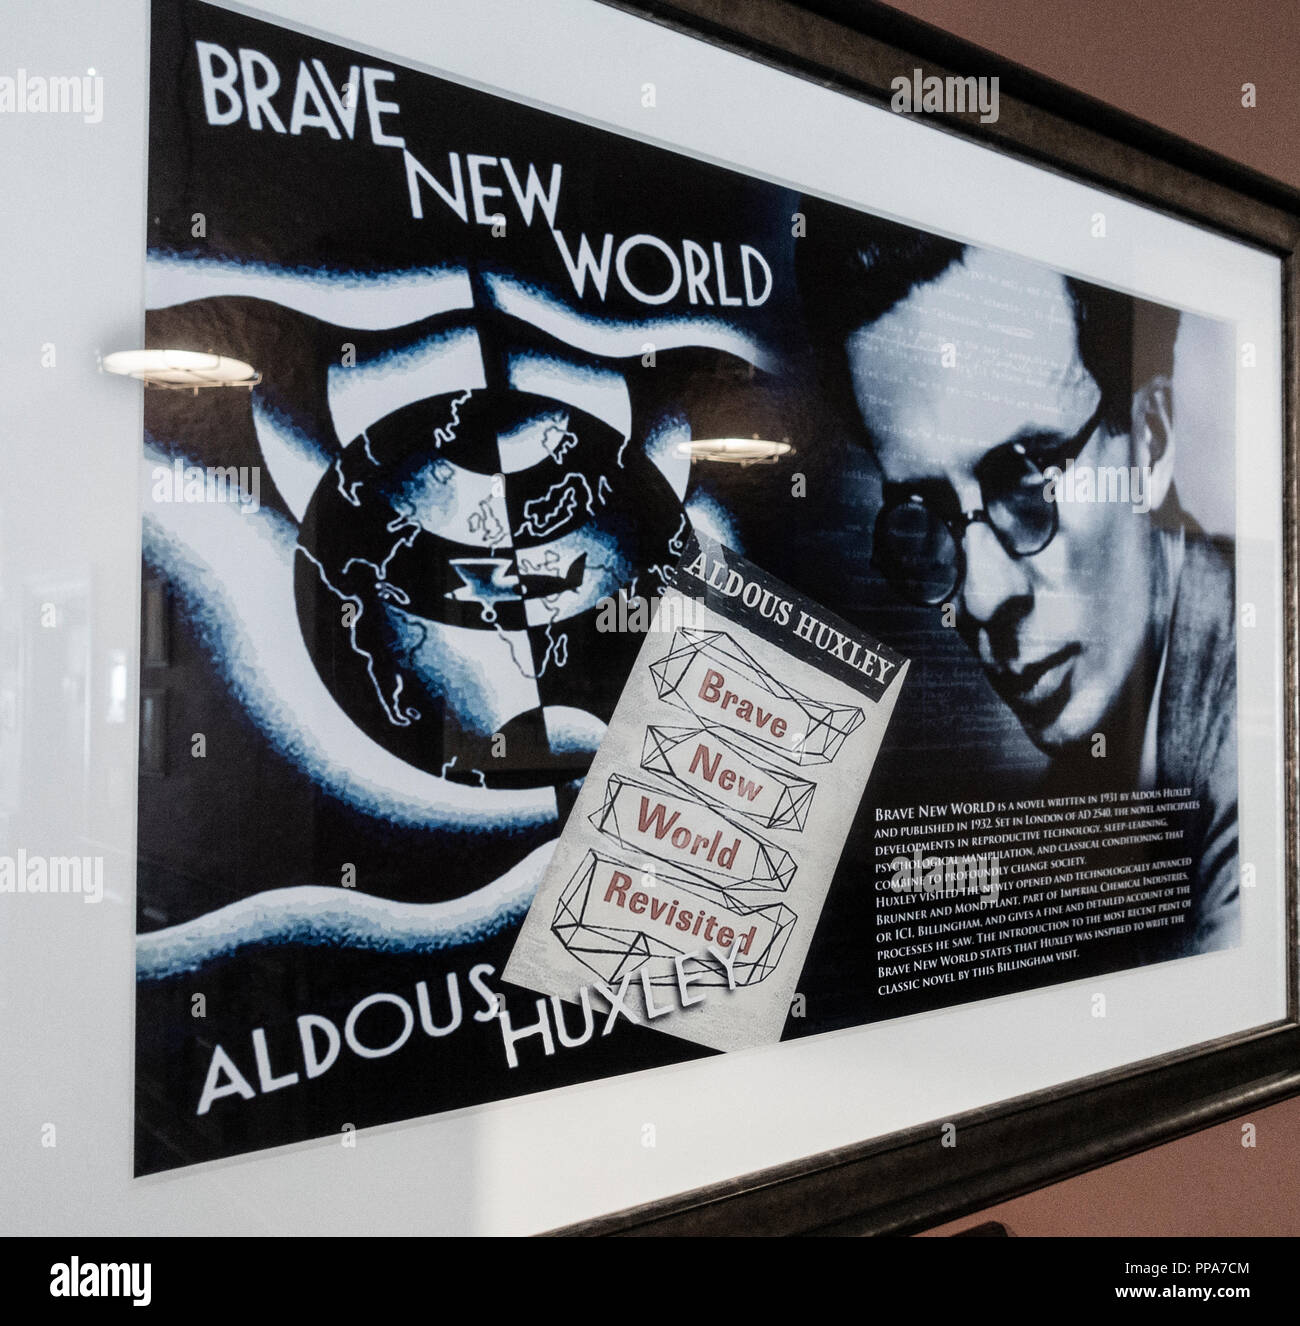 Aldous Huxley en Brave New World poster en pub en Billingham. Su visita al Reino Unido Brunner Mond planta química se dice que fue la inspiración de libros. Foto de stock